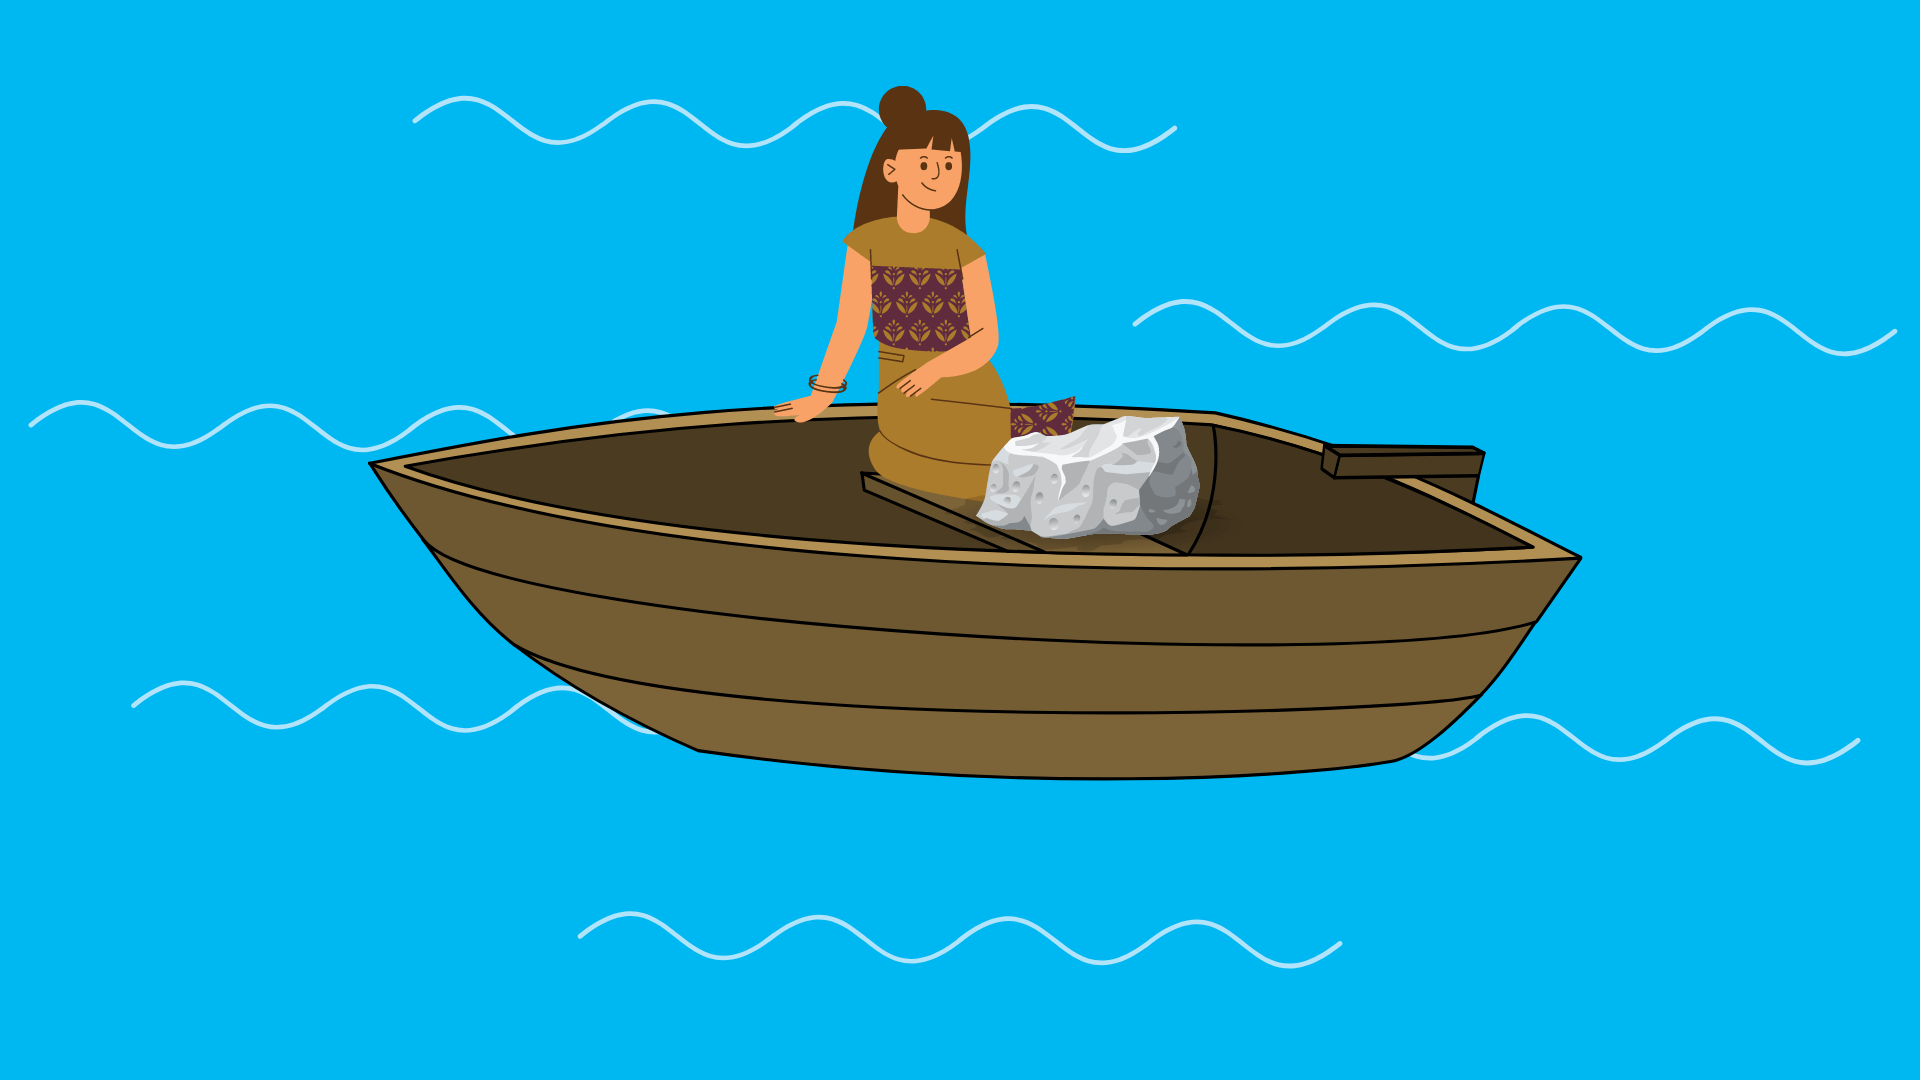 Stein auf dem Boot (****)